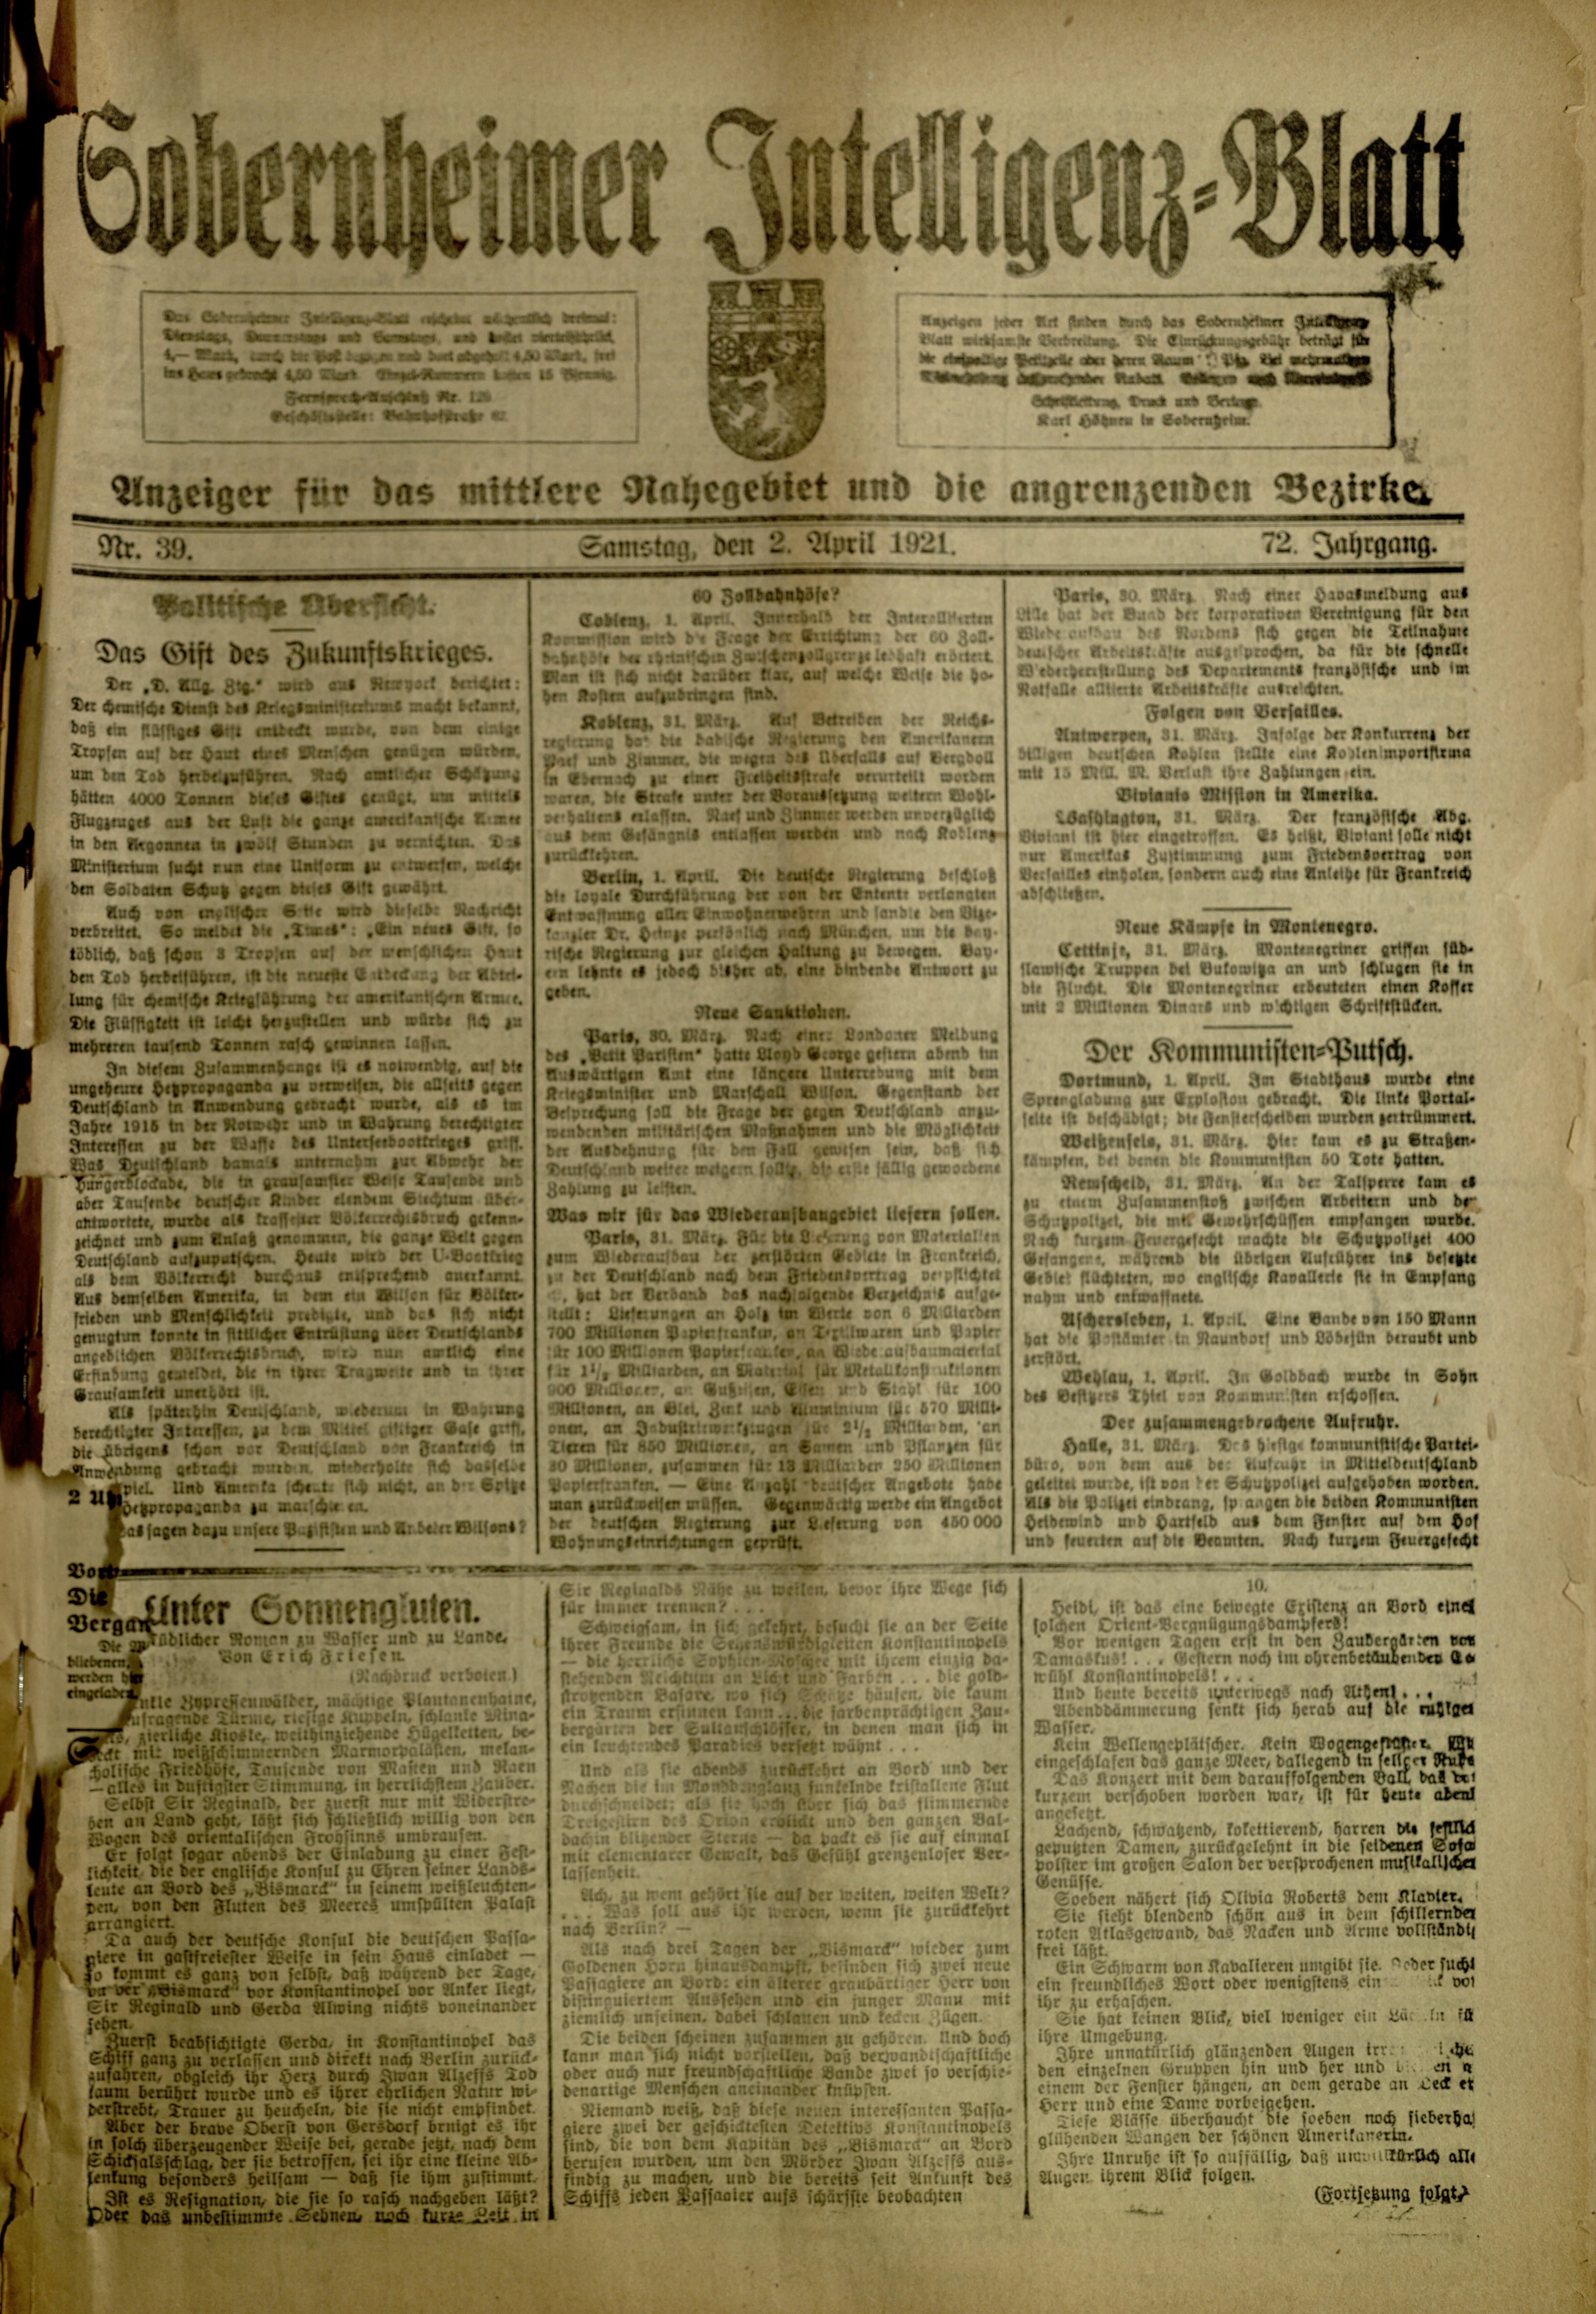 Zeitung: Sobernheimer Intelligenzblatt; April 1921, Jg. 72 Nr. 39 (Heimatmuseum Bad Sobernheim CC BY-NC-SA)